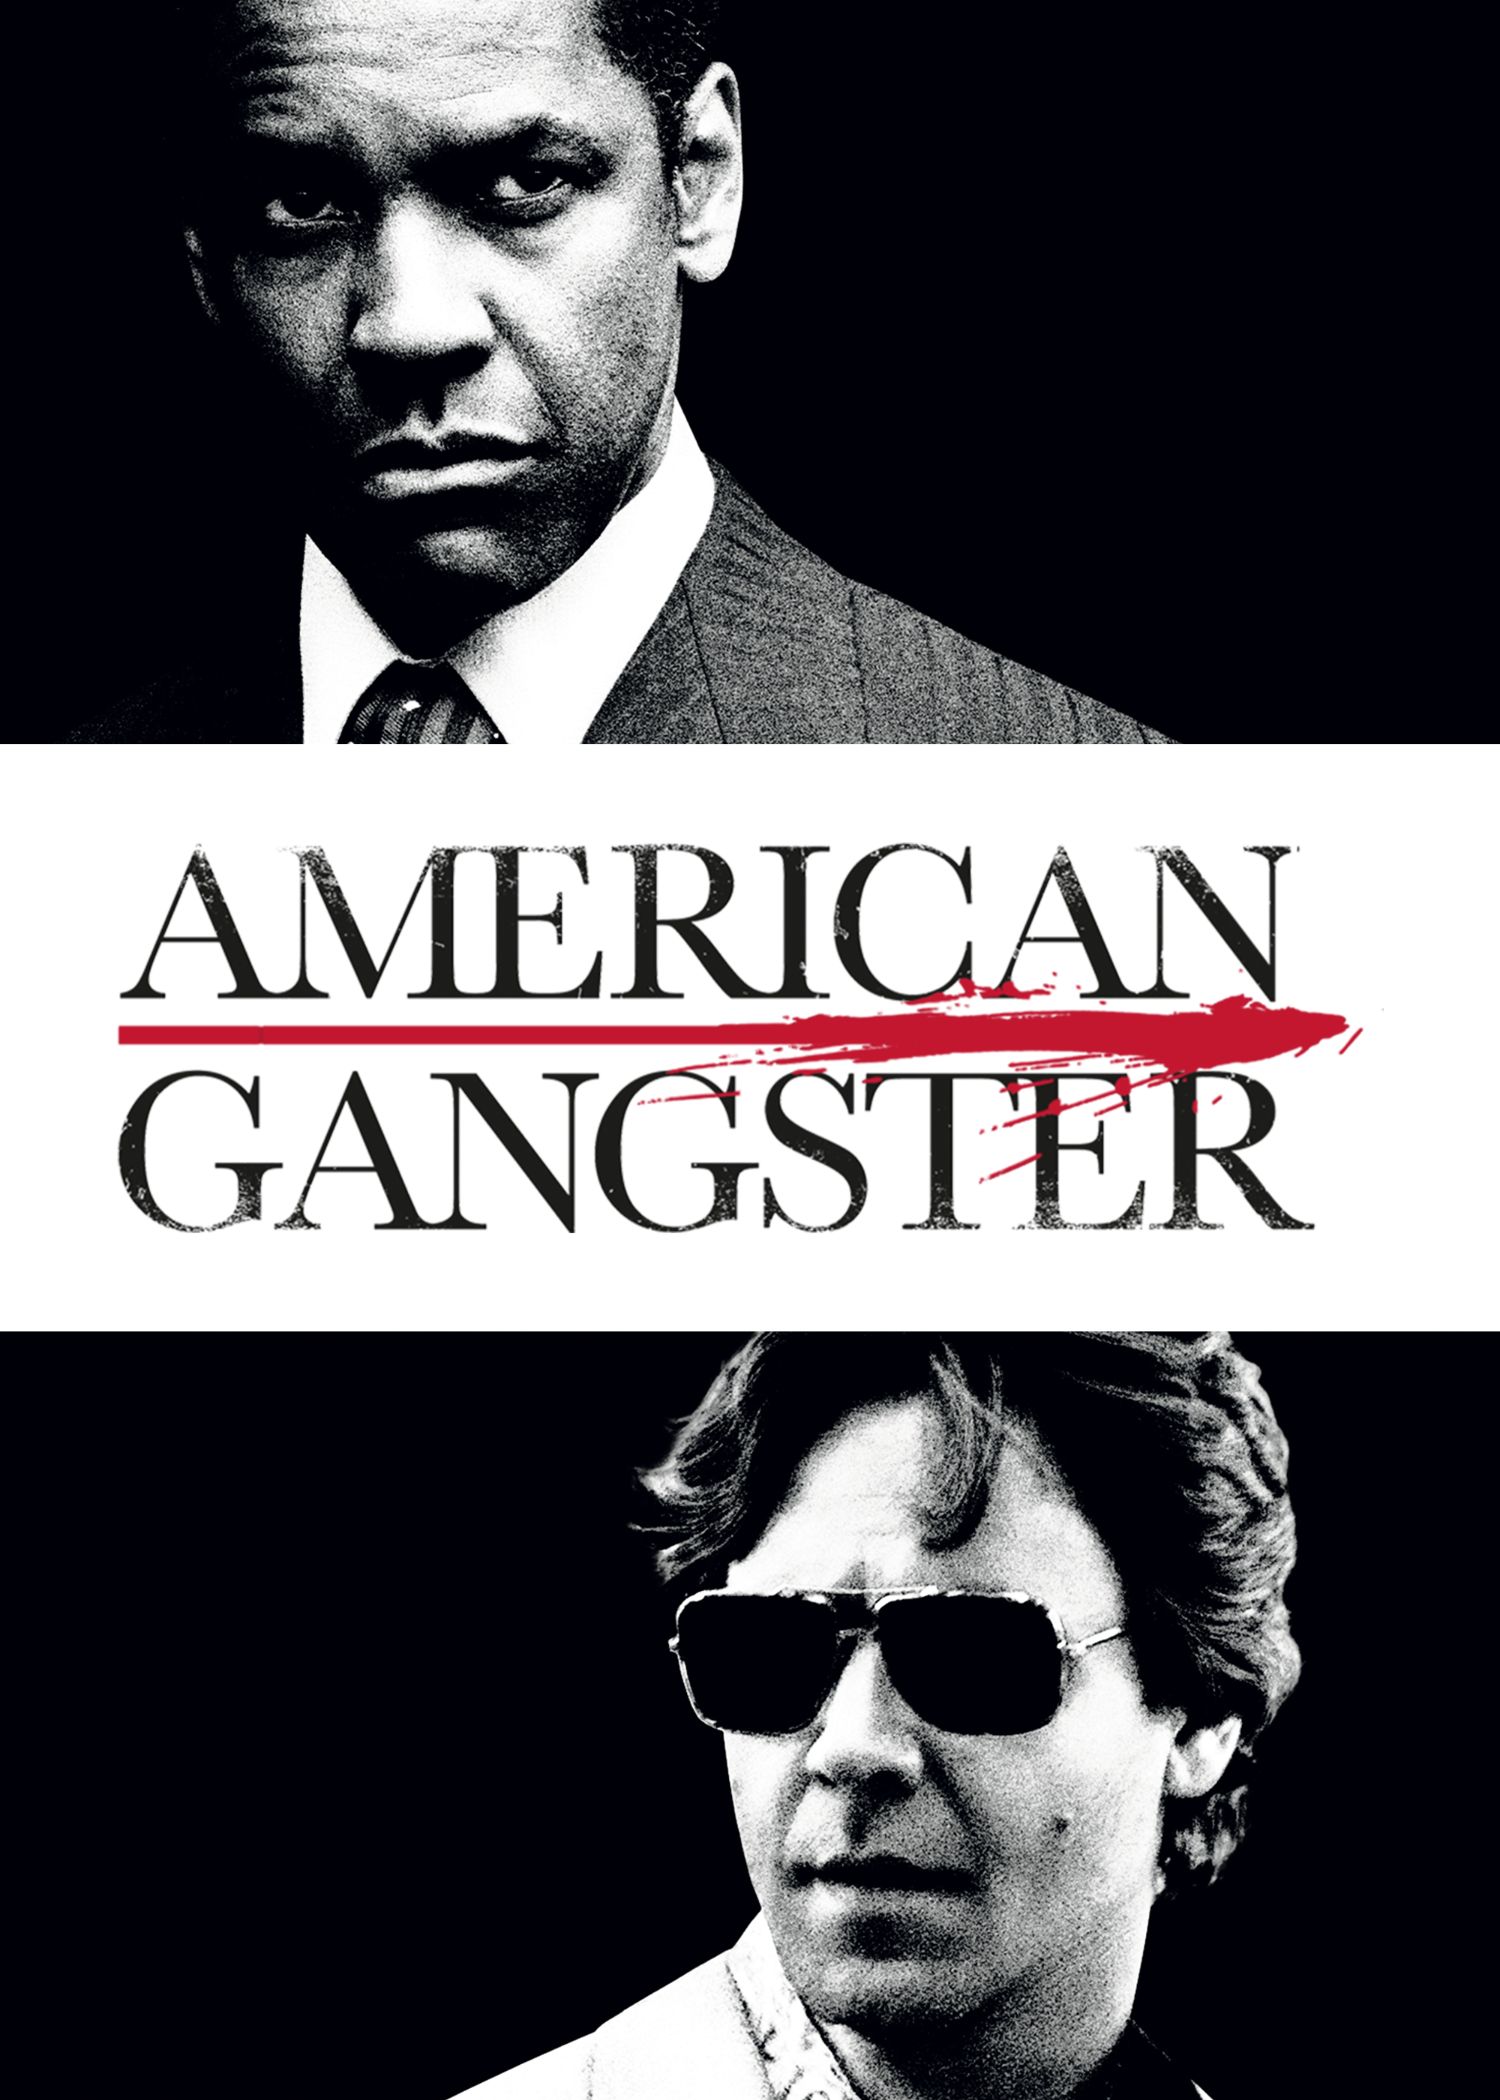 American Gangster - Films - Acheter/Louer - Rakuten TV